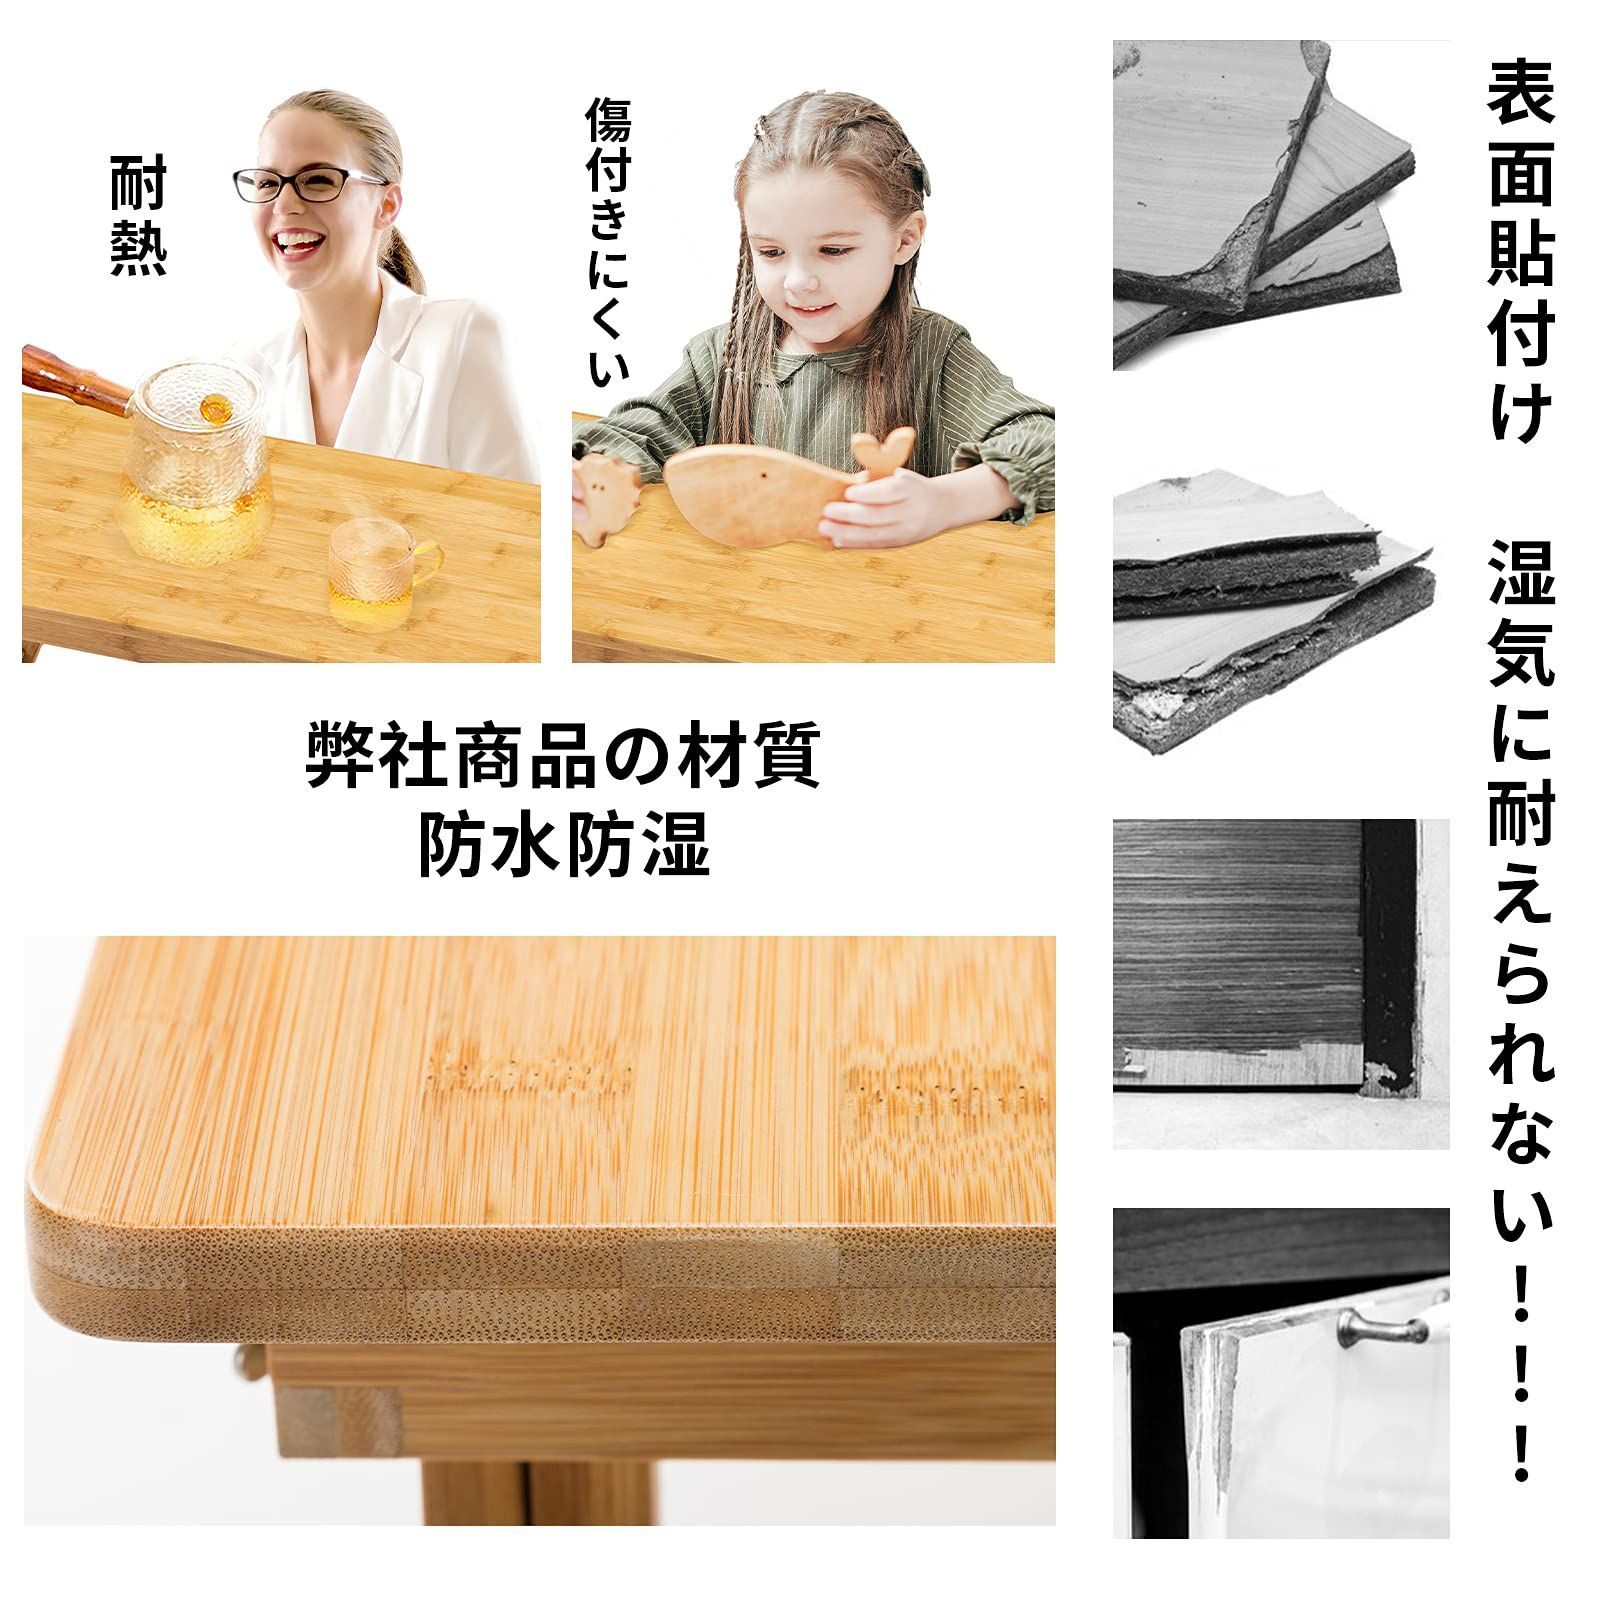 特価商品】(55*35cm ミニテーブル 小型 キャンプテーブル デザイン